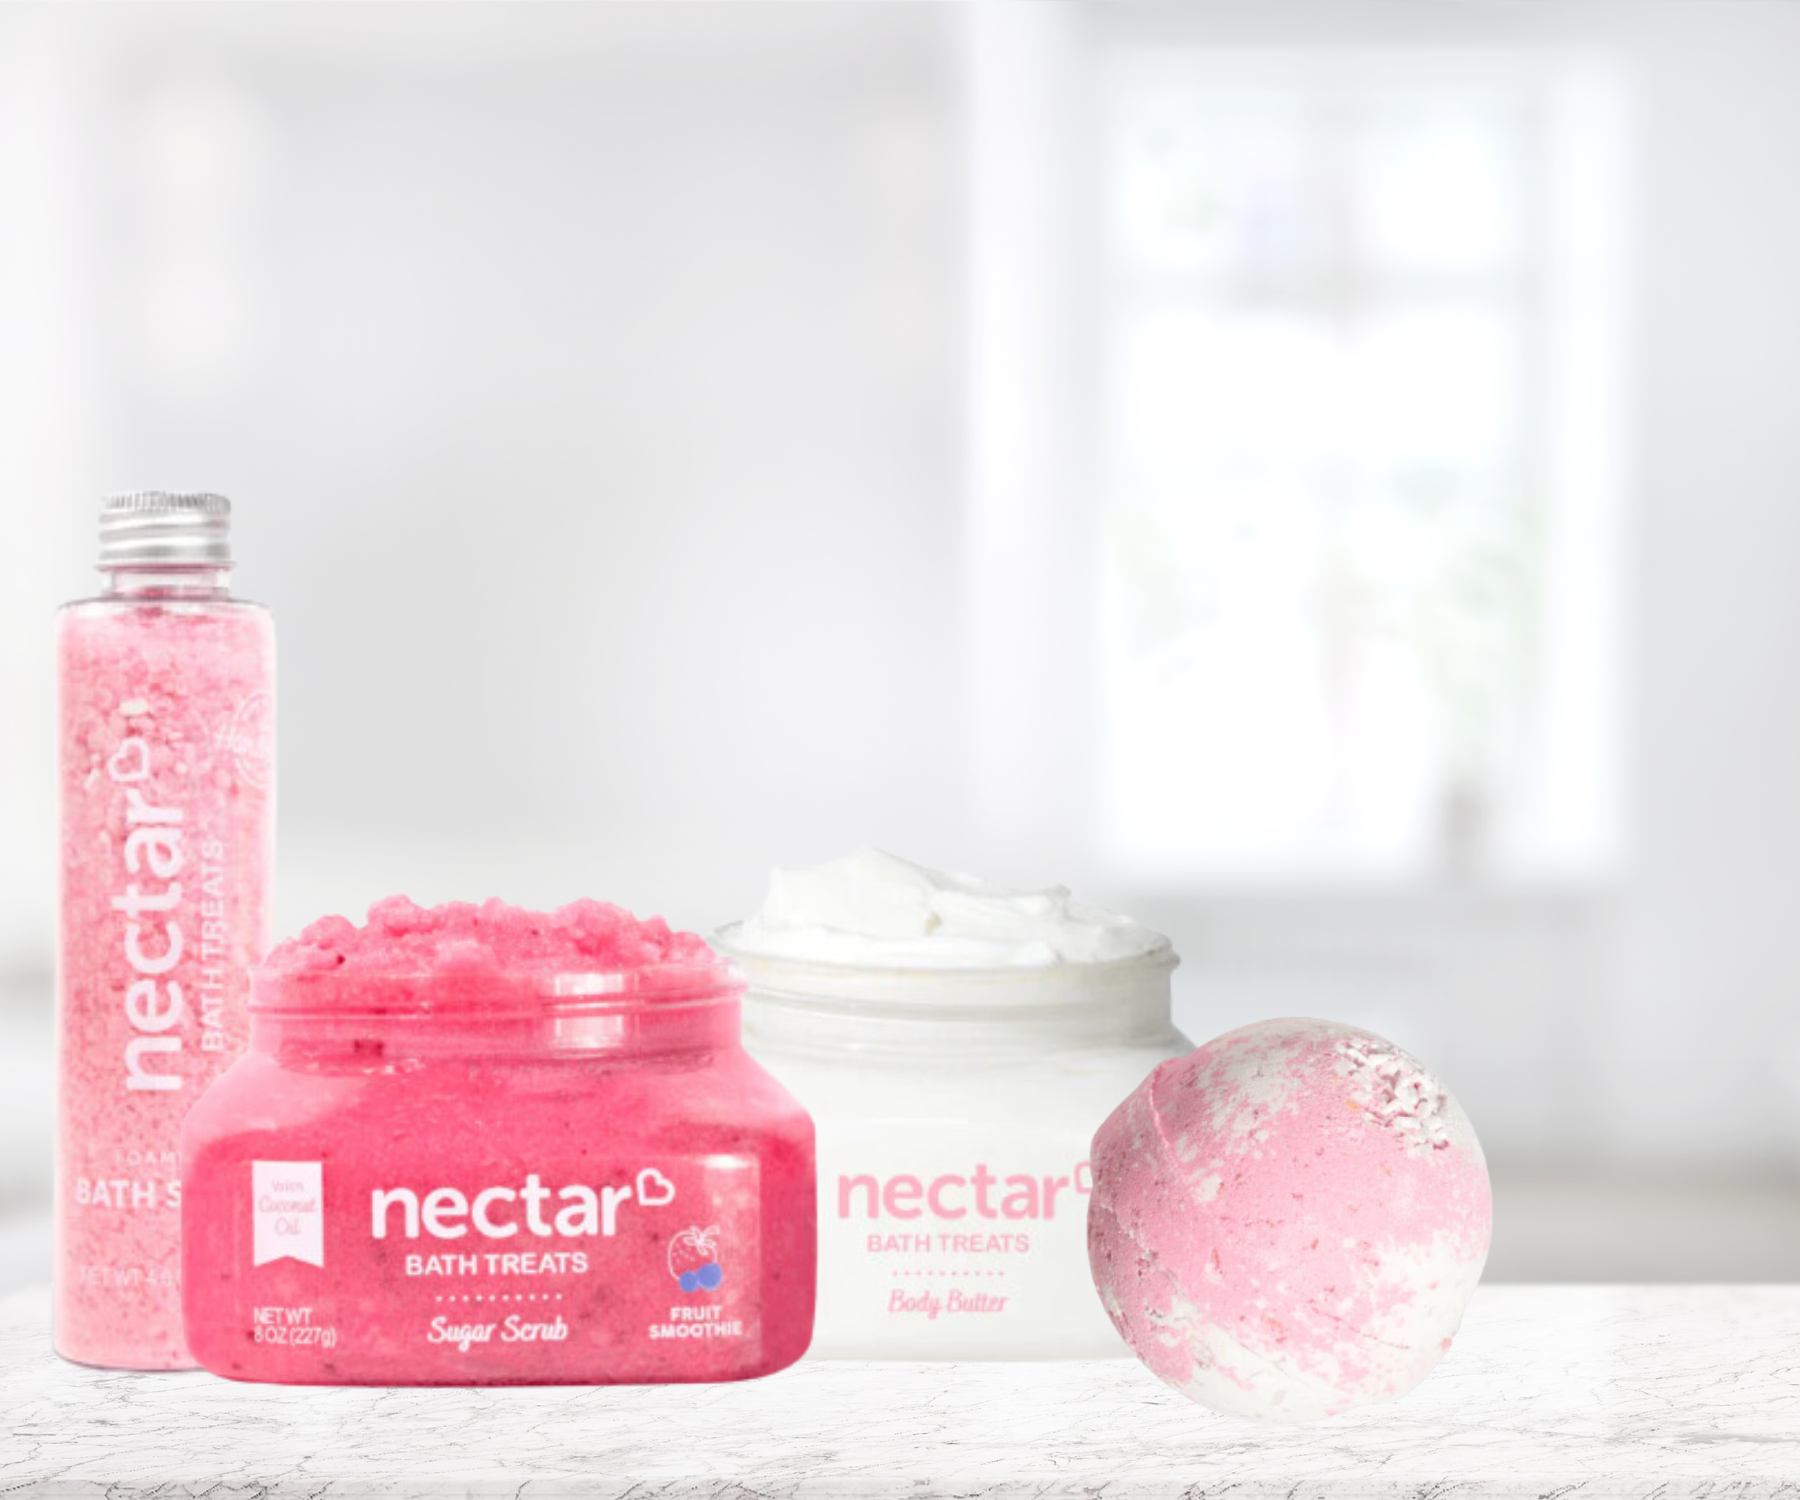 Nectar Bath Treats Foaming Bath Salts, Body Scrub, Body Butter, and Bath Bomb.